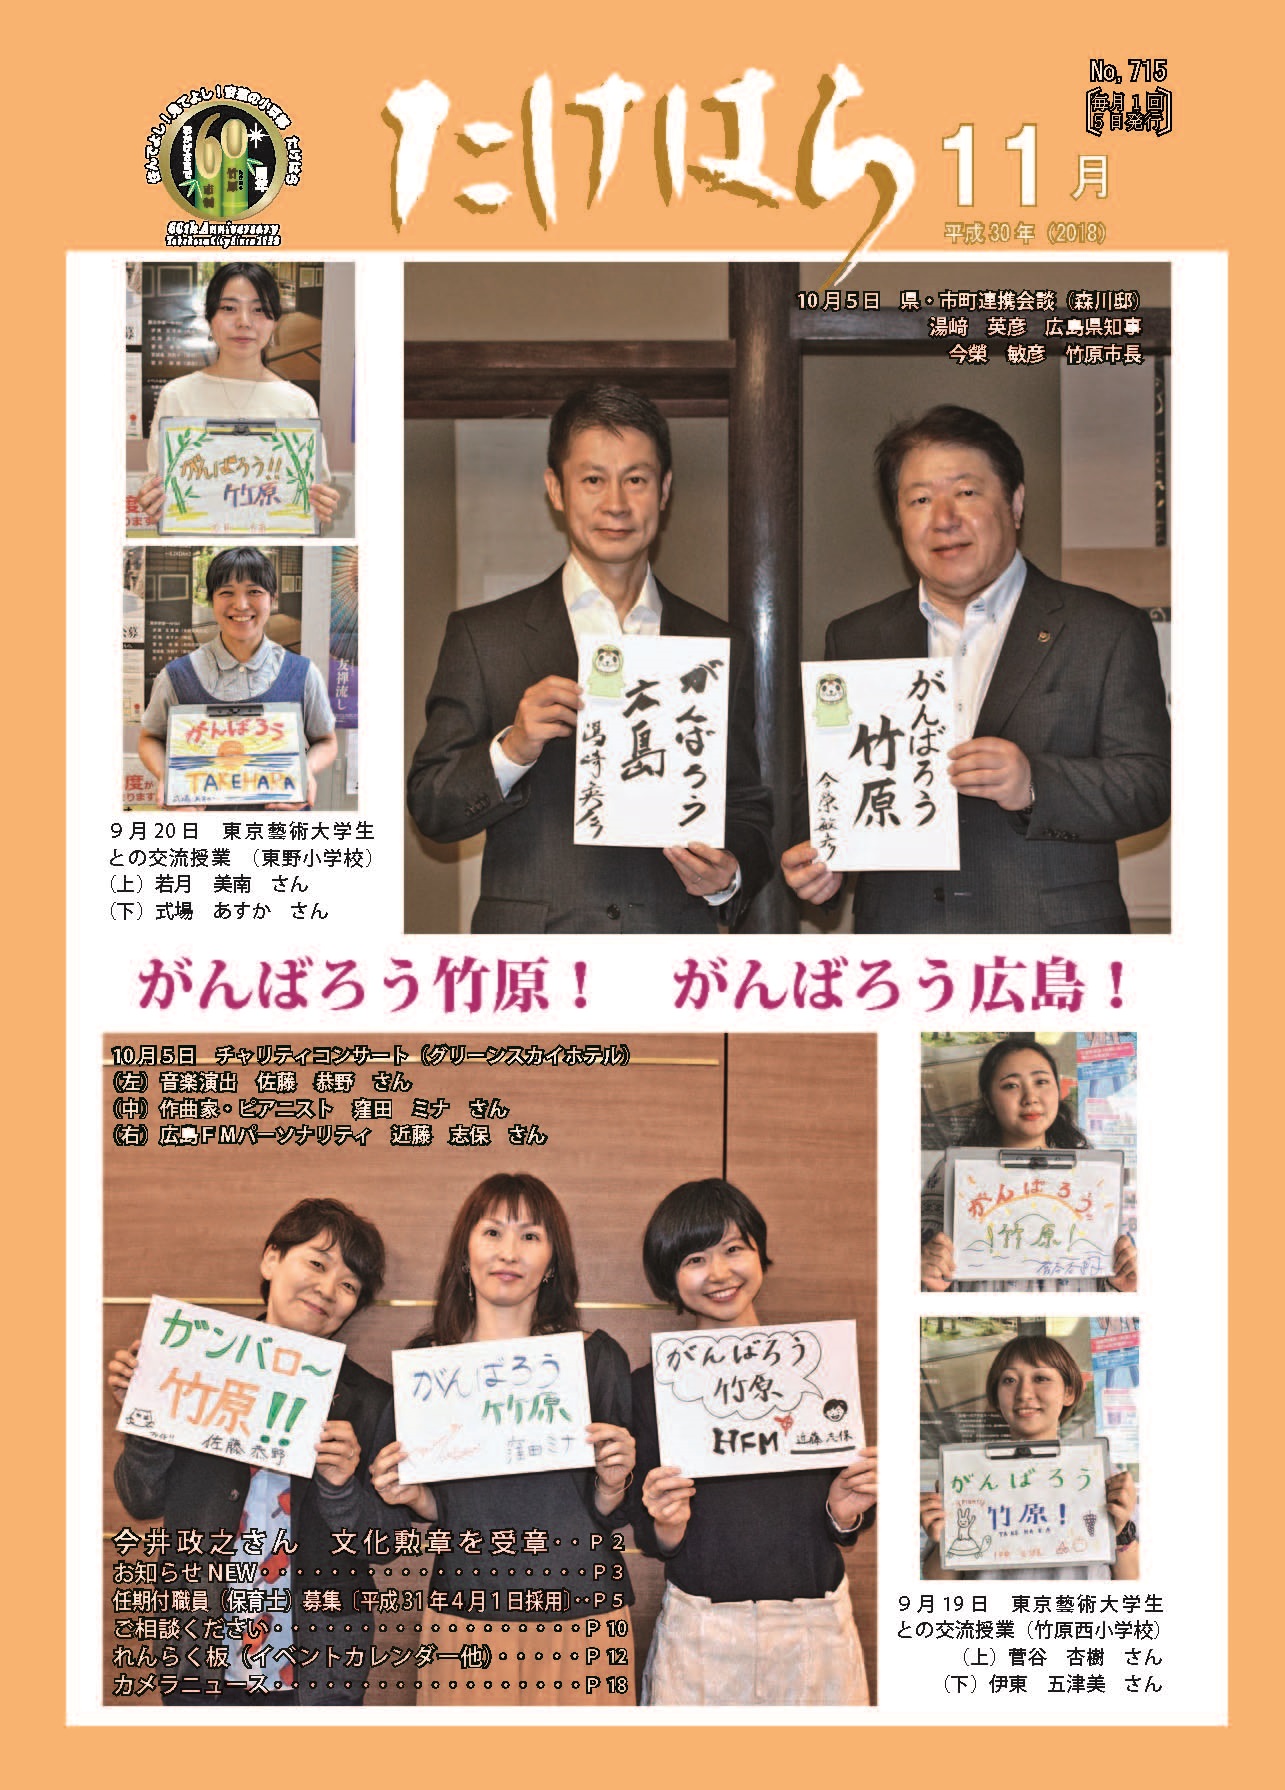 広報たけはら平成30年11月号表紙「がんばろう竹原 がんばろう広島」